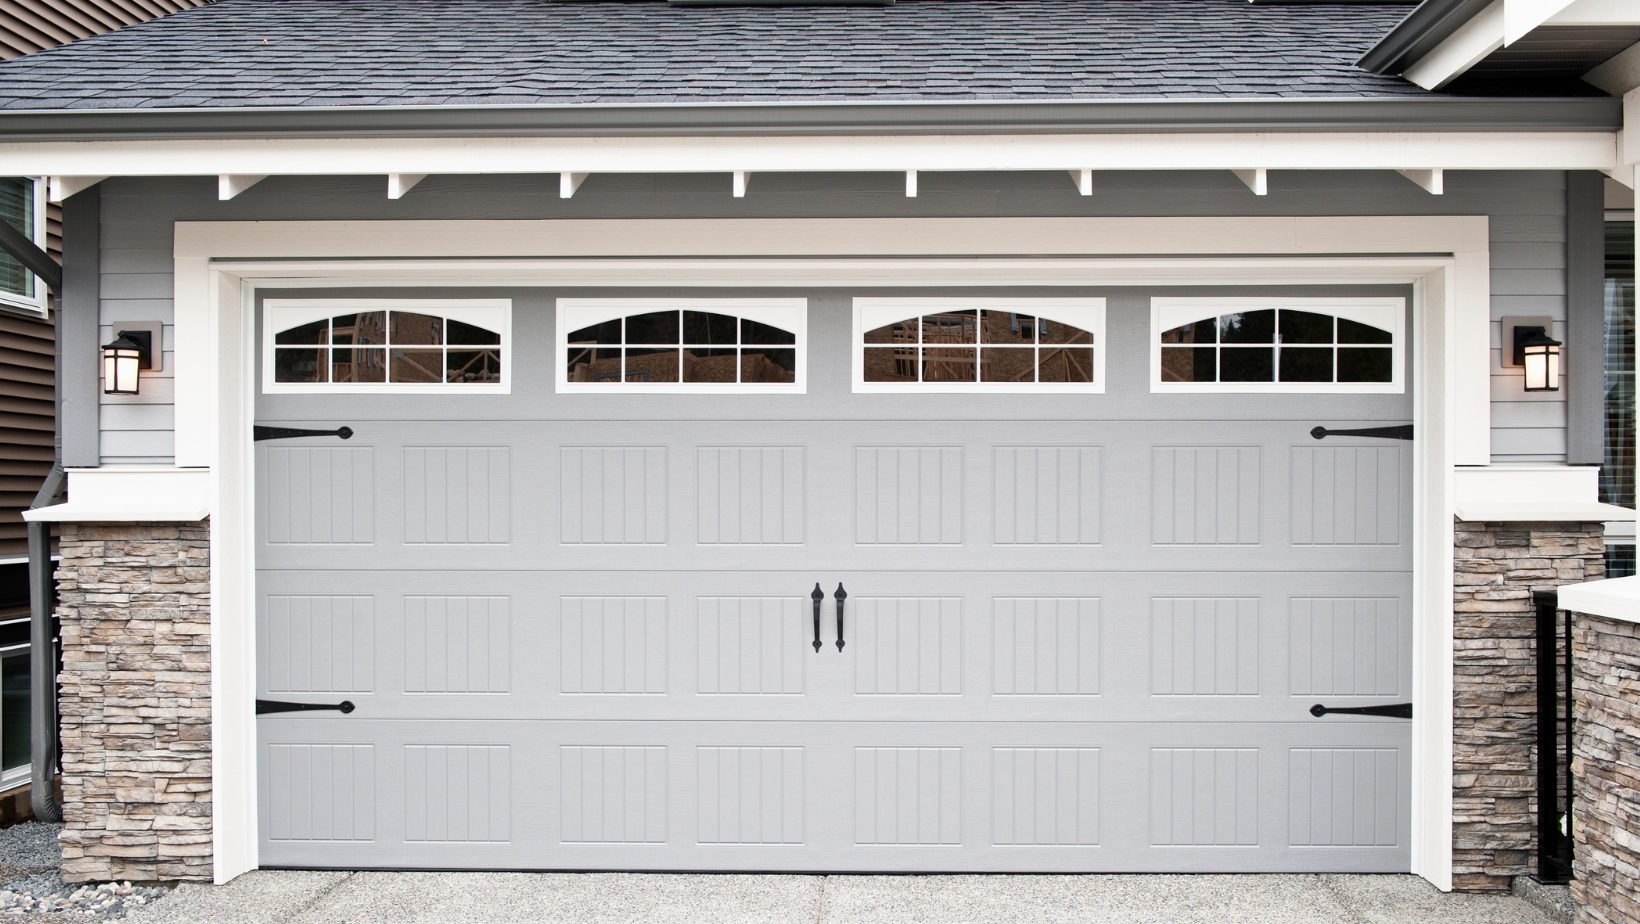 10 x 7 garage doors for sale